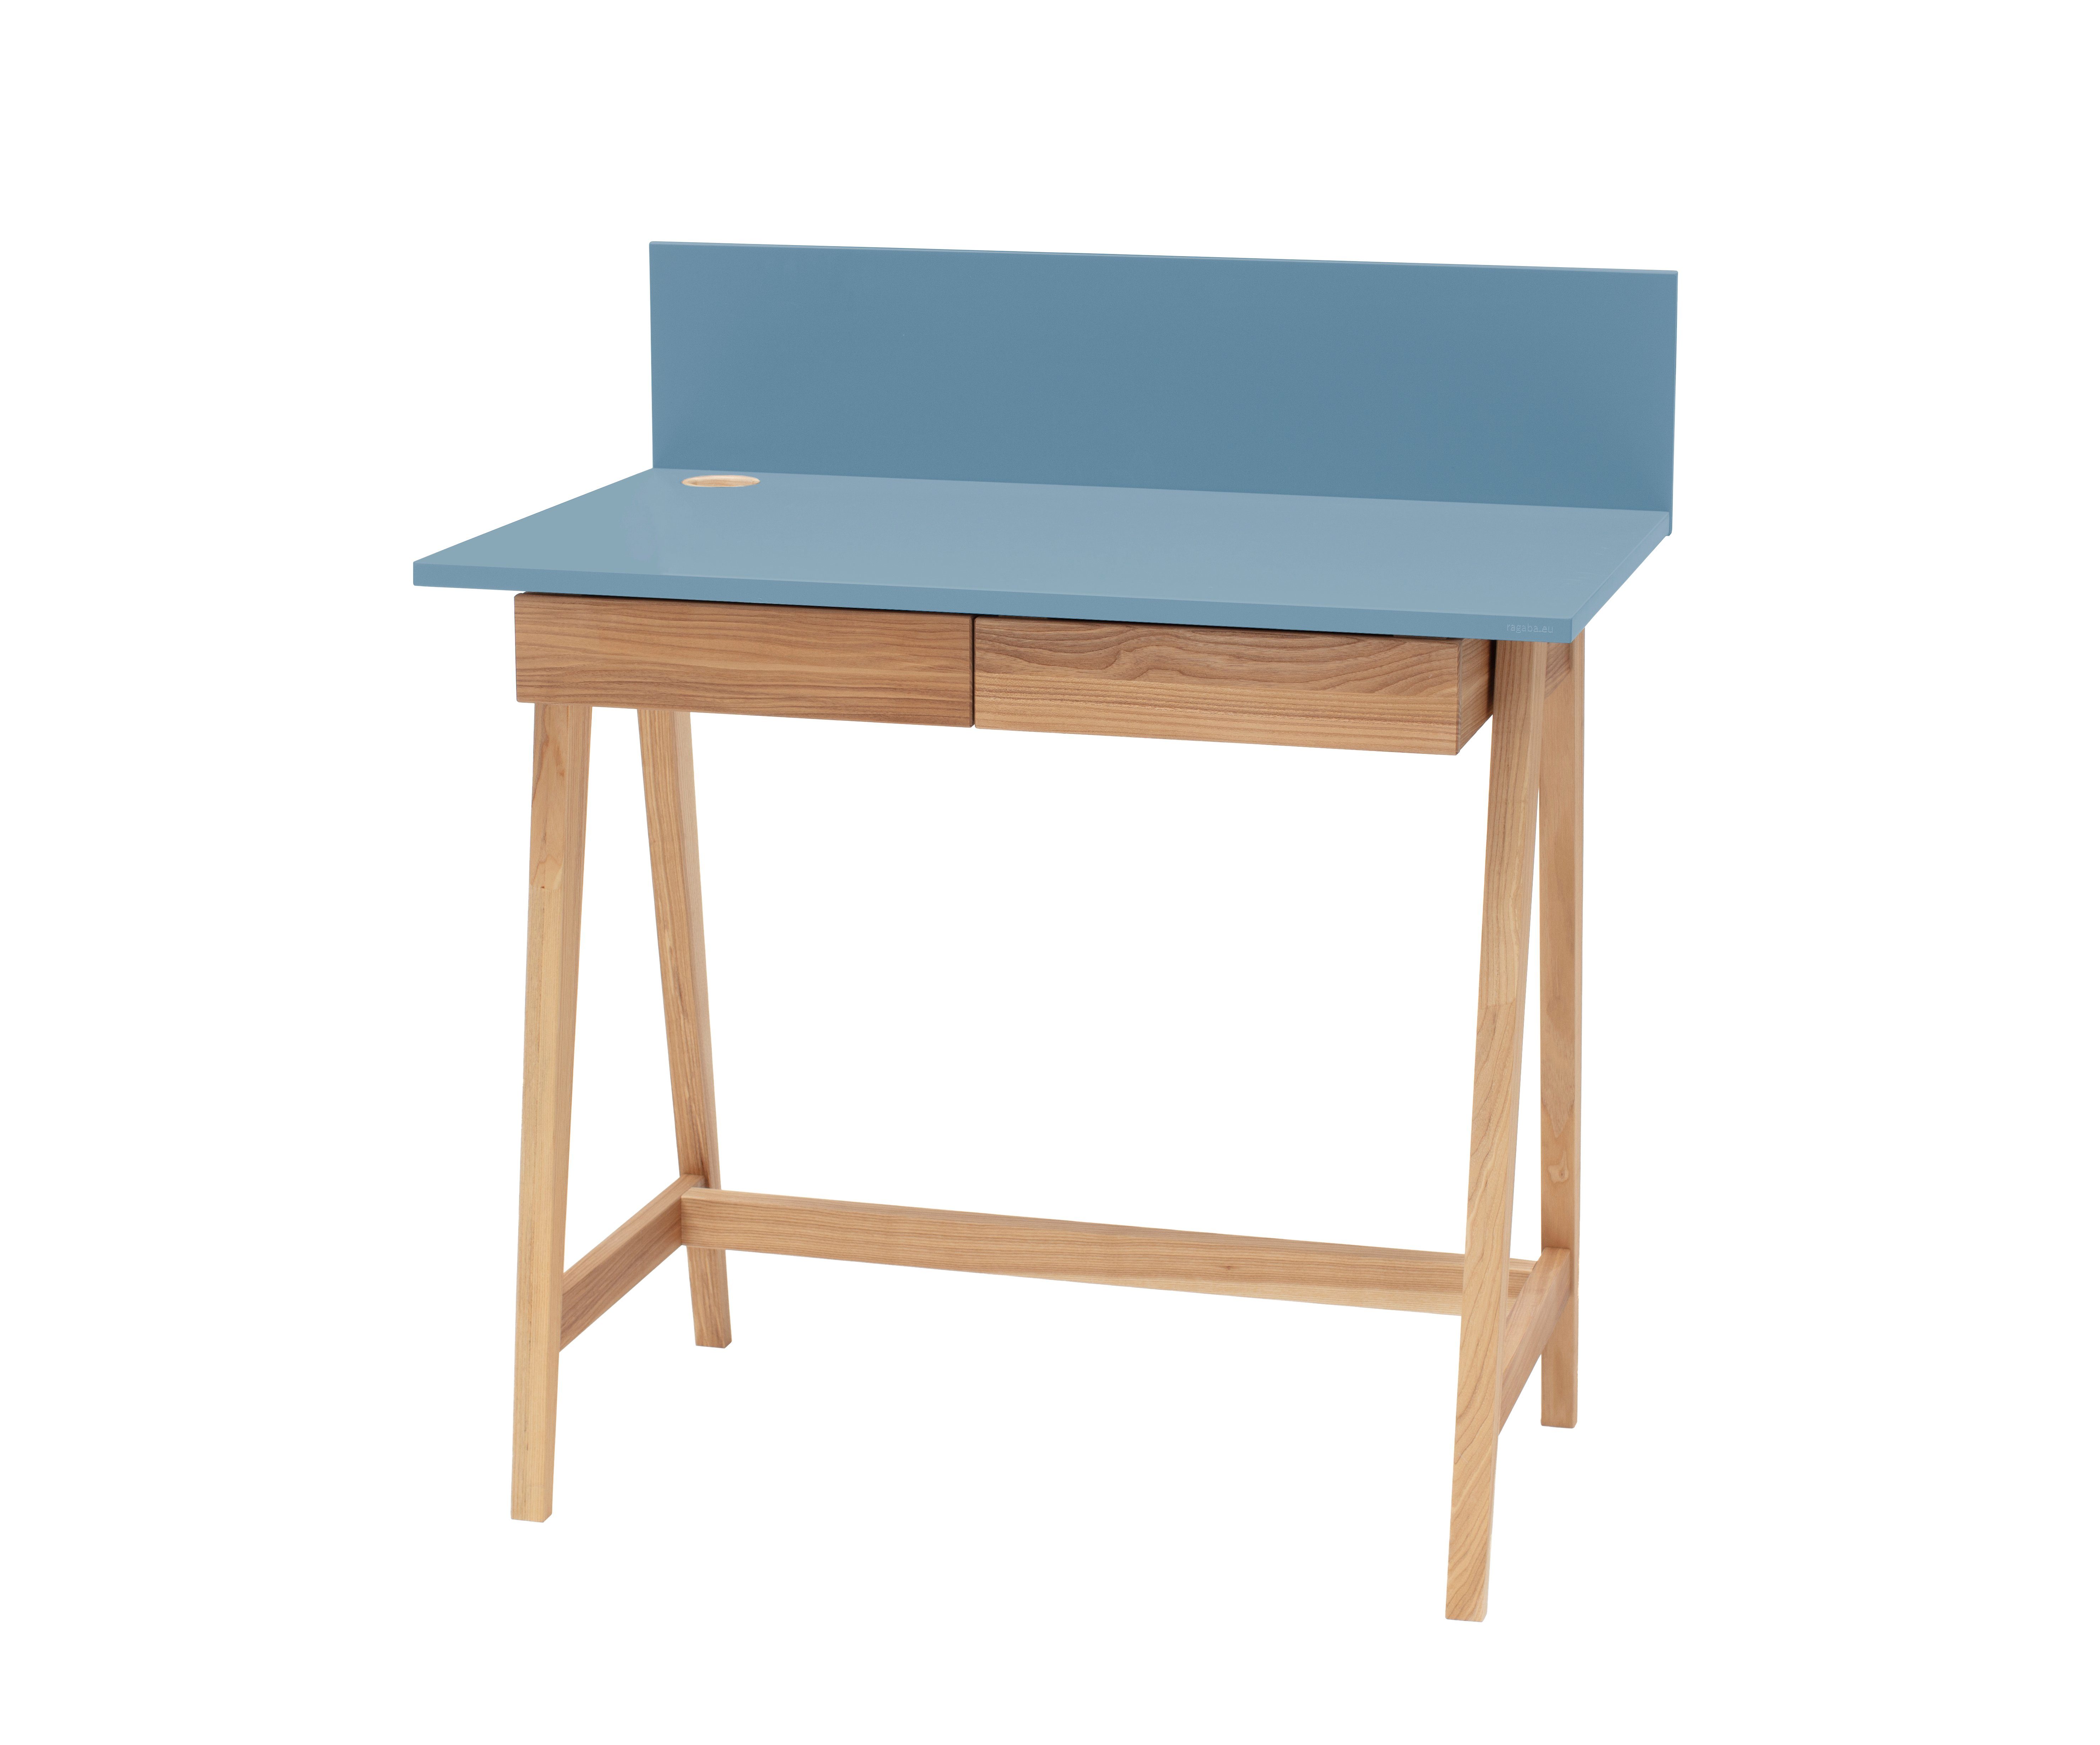 Siblo Schreibtisch Kinderschreibtisch Andrea mit Schubladen - Bunter Schreibtisch - minimalistisches Design - Kinderzimmer - MDF-Platte - Eschenholz (Kinderschreibtisch Andrea mit Schubladen) Blau